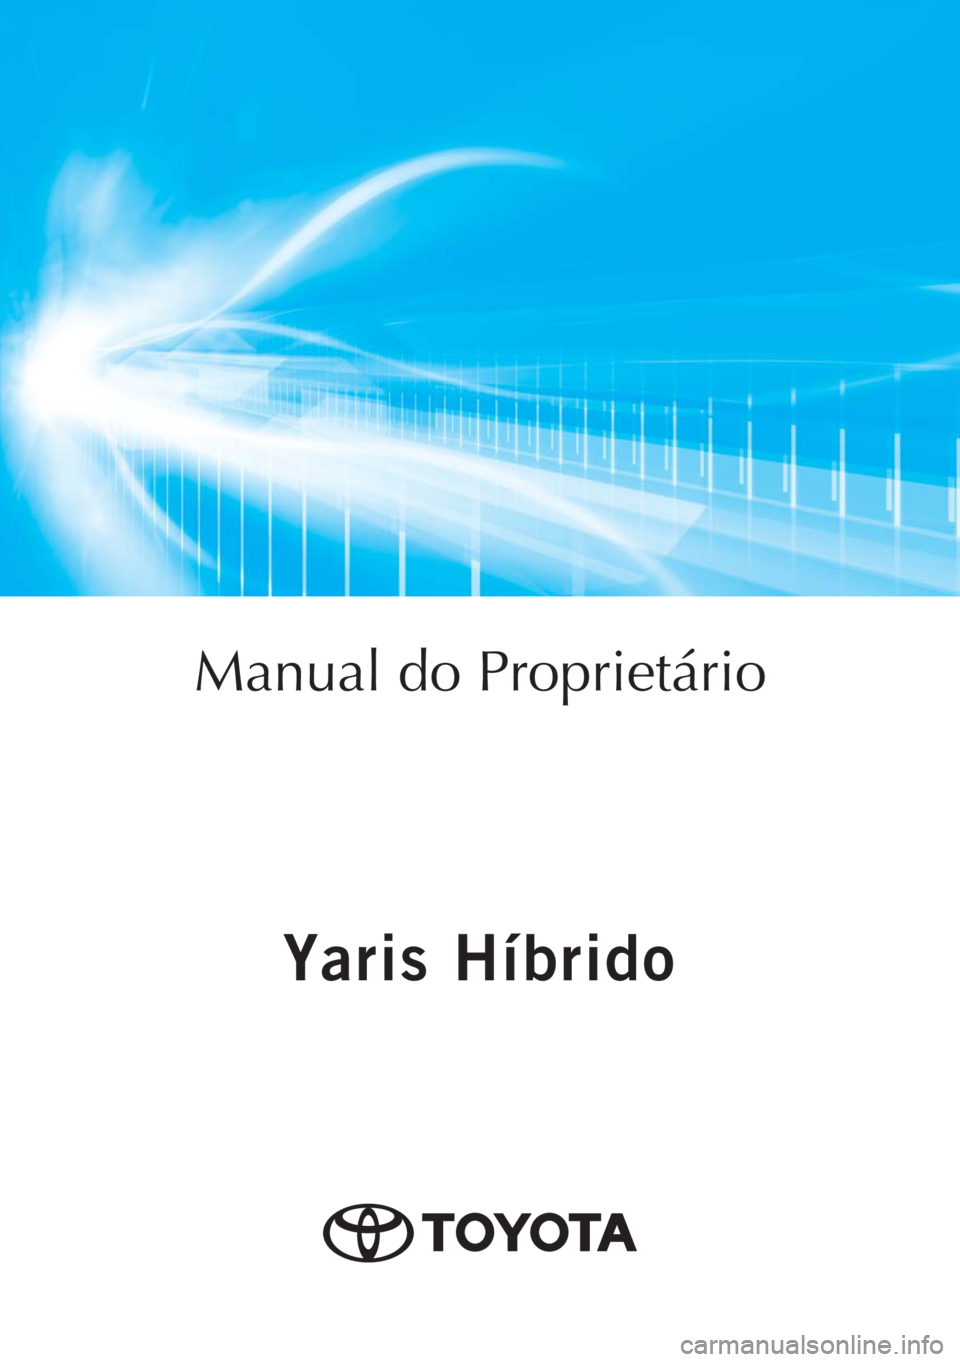 TOYOTA YARIS HATCHBACK 2018  Manual de utilização (in Portuguese) Yaris Híbrido
Yaris Híbrido
Manual do Proprietário
Mod. OM52C96PT
Public. N.º OM52C96E
ORGAL-PORTOToyota Caetano Portugal, S.A. 